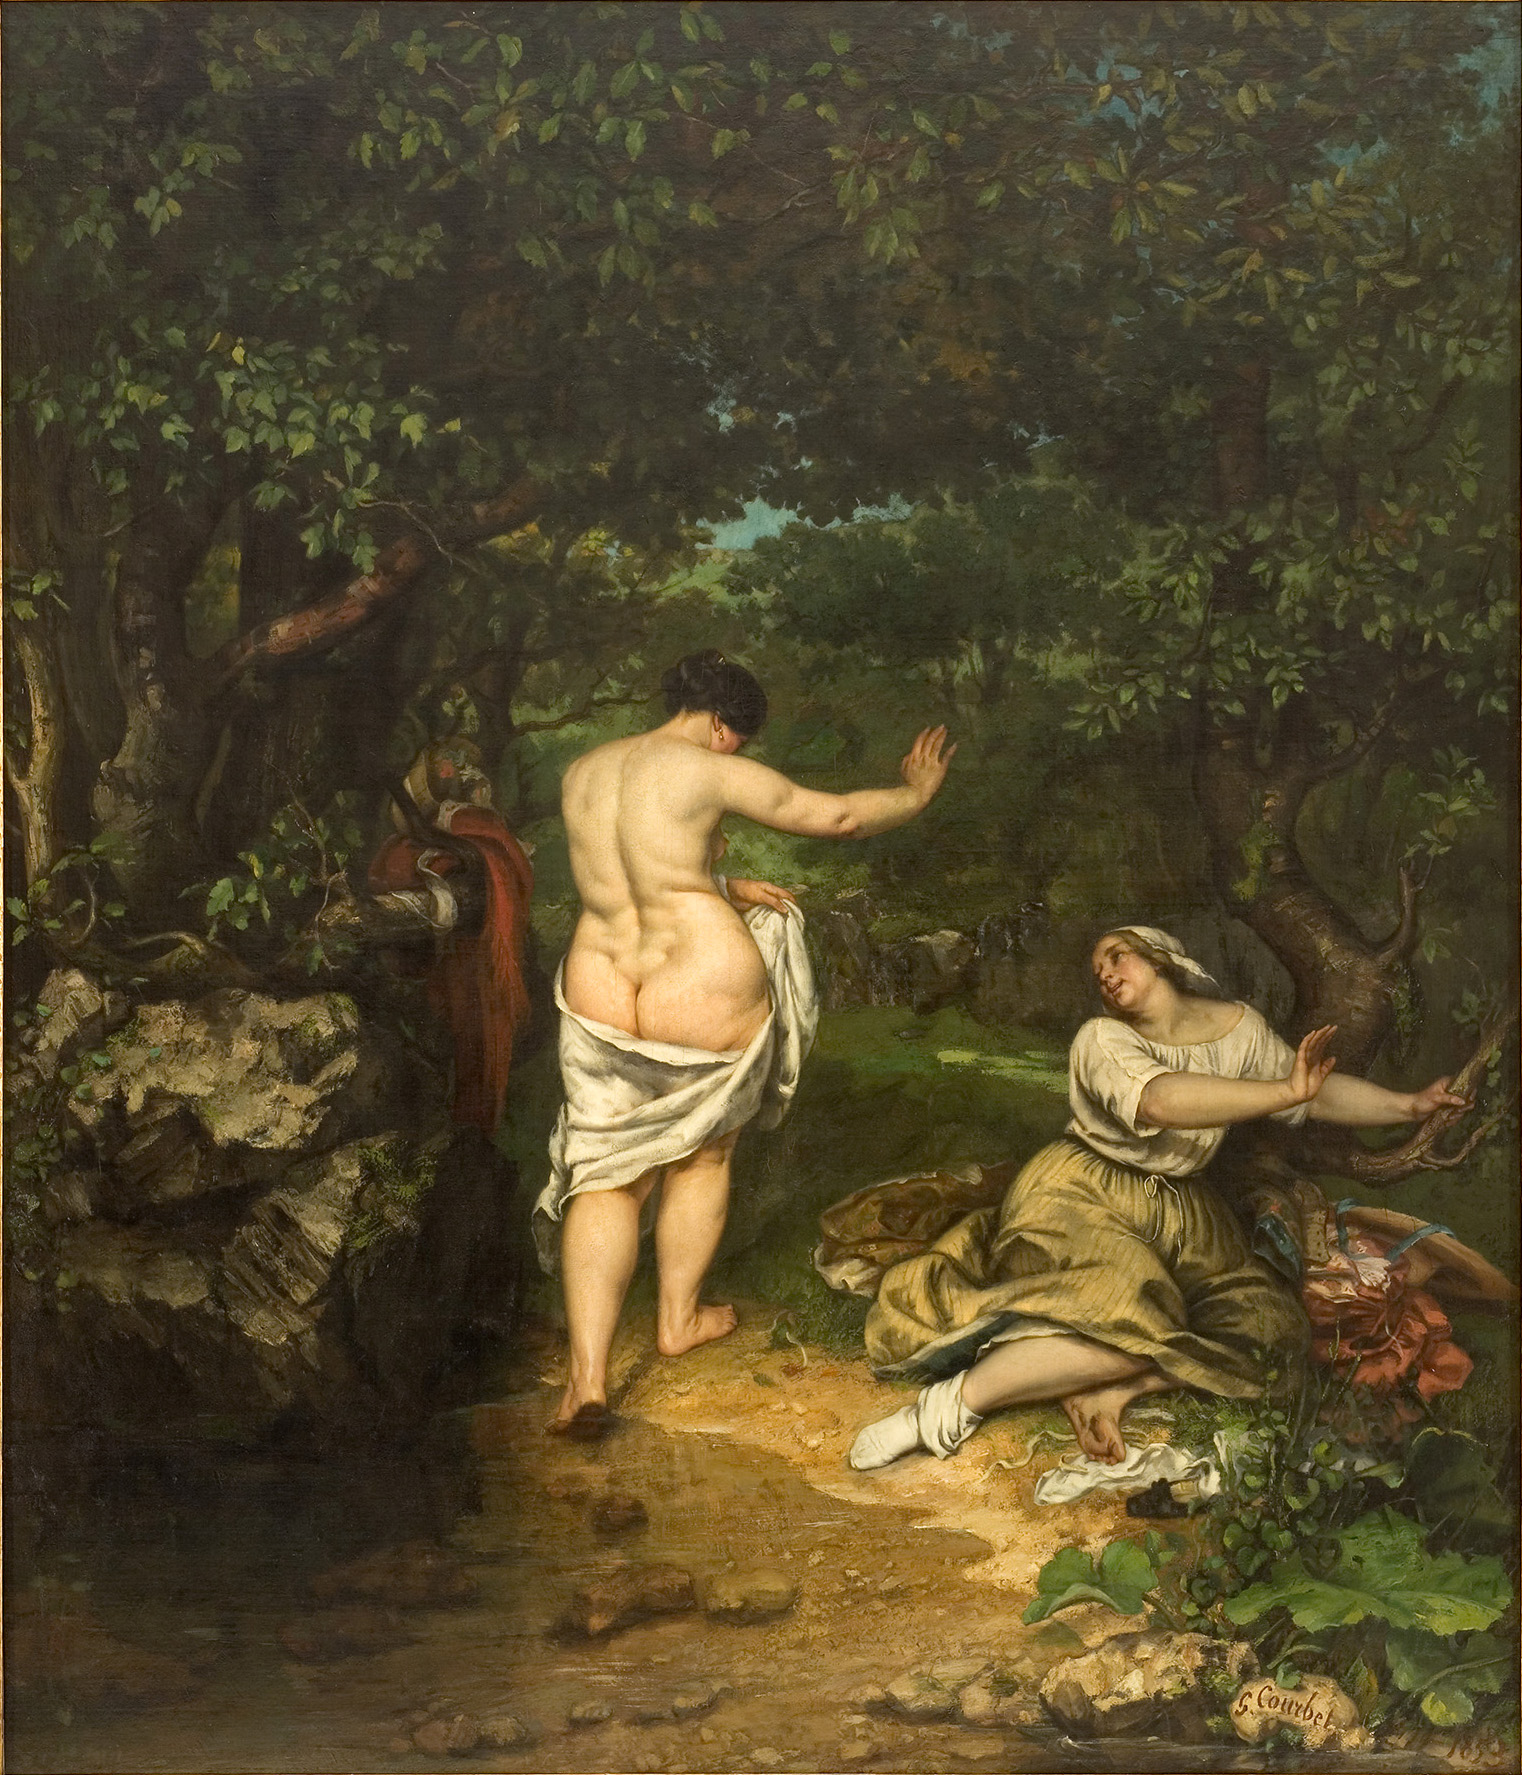 浴女 by 古斯塔夫 庫爾貝 - 1853 - 227 x 193 厘米 